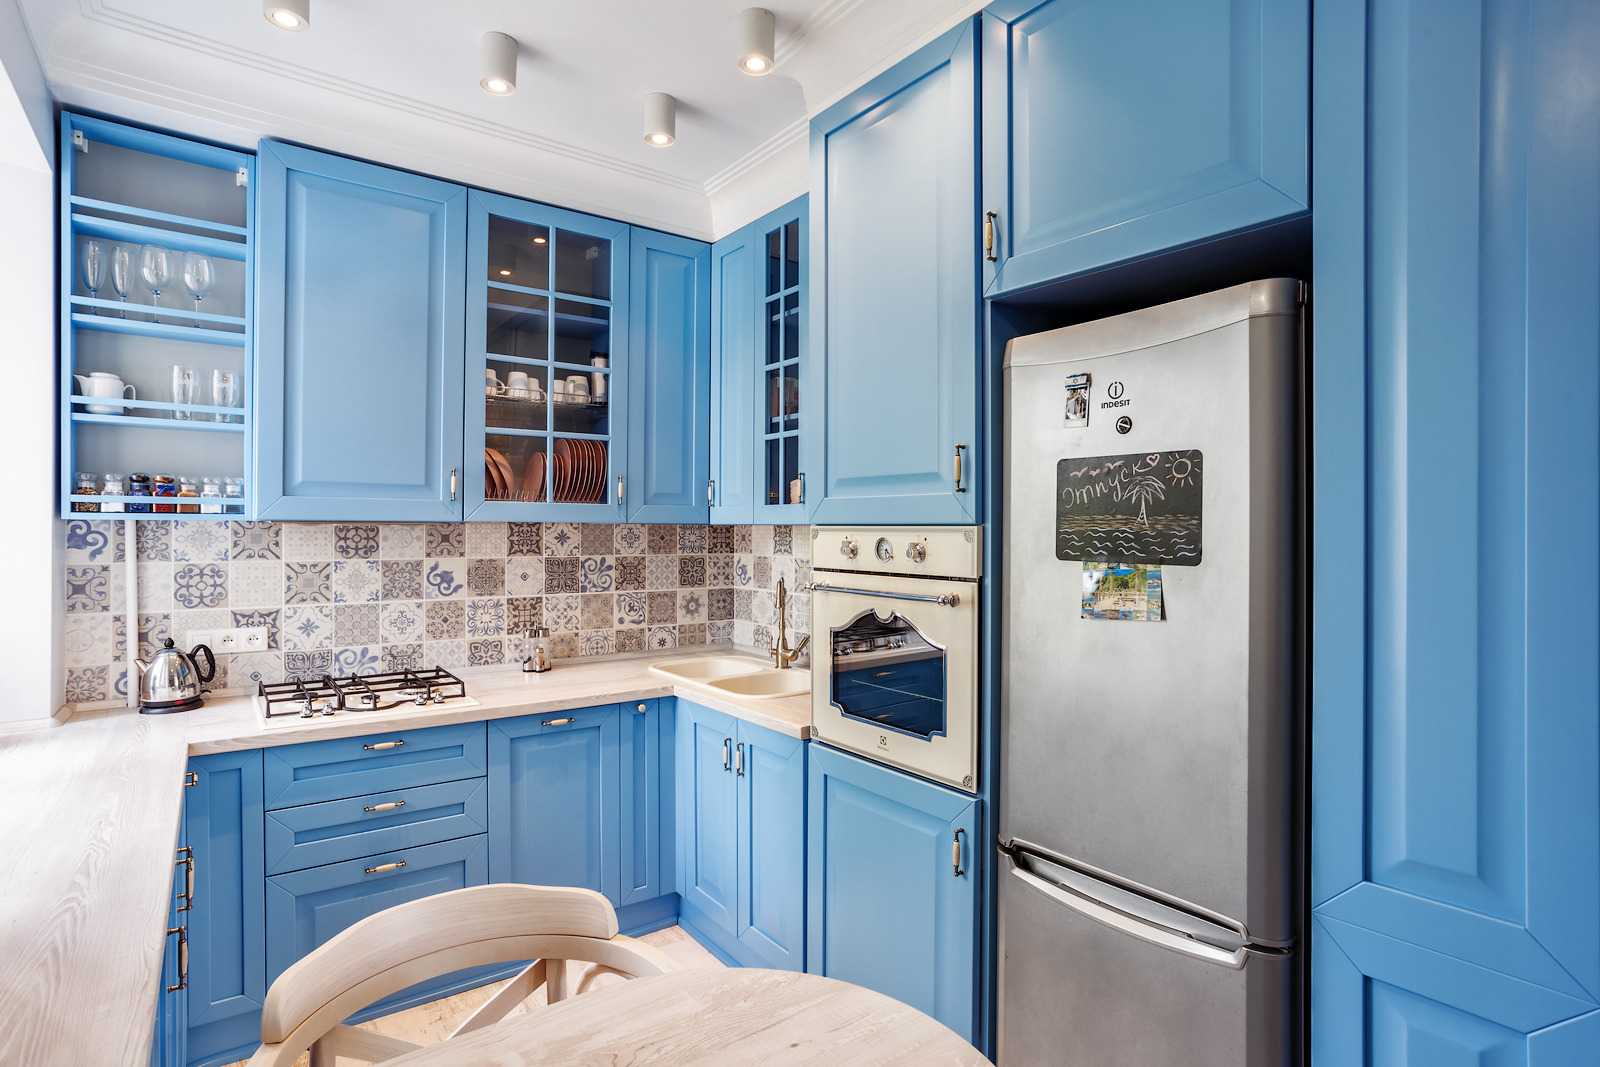 Бело-голубая кухня (27 фото): кухонные гарнитуры с белым верхом и голубым низом в интерьере